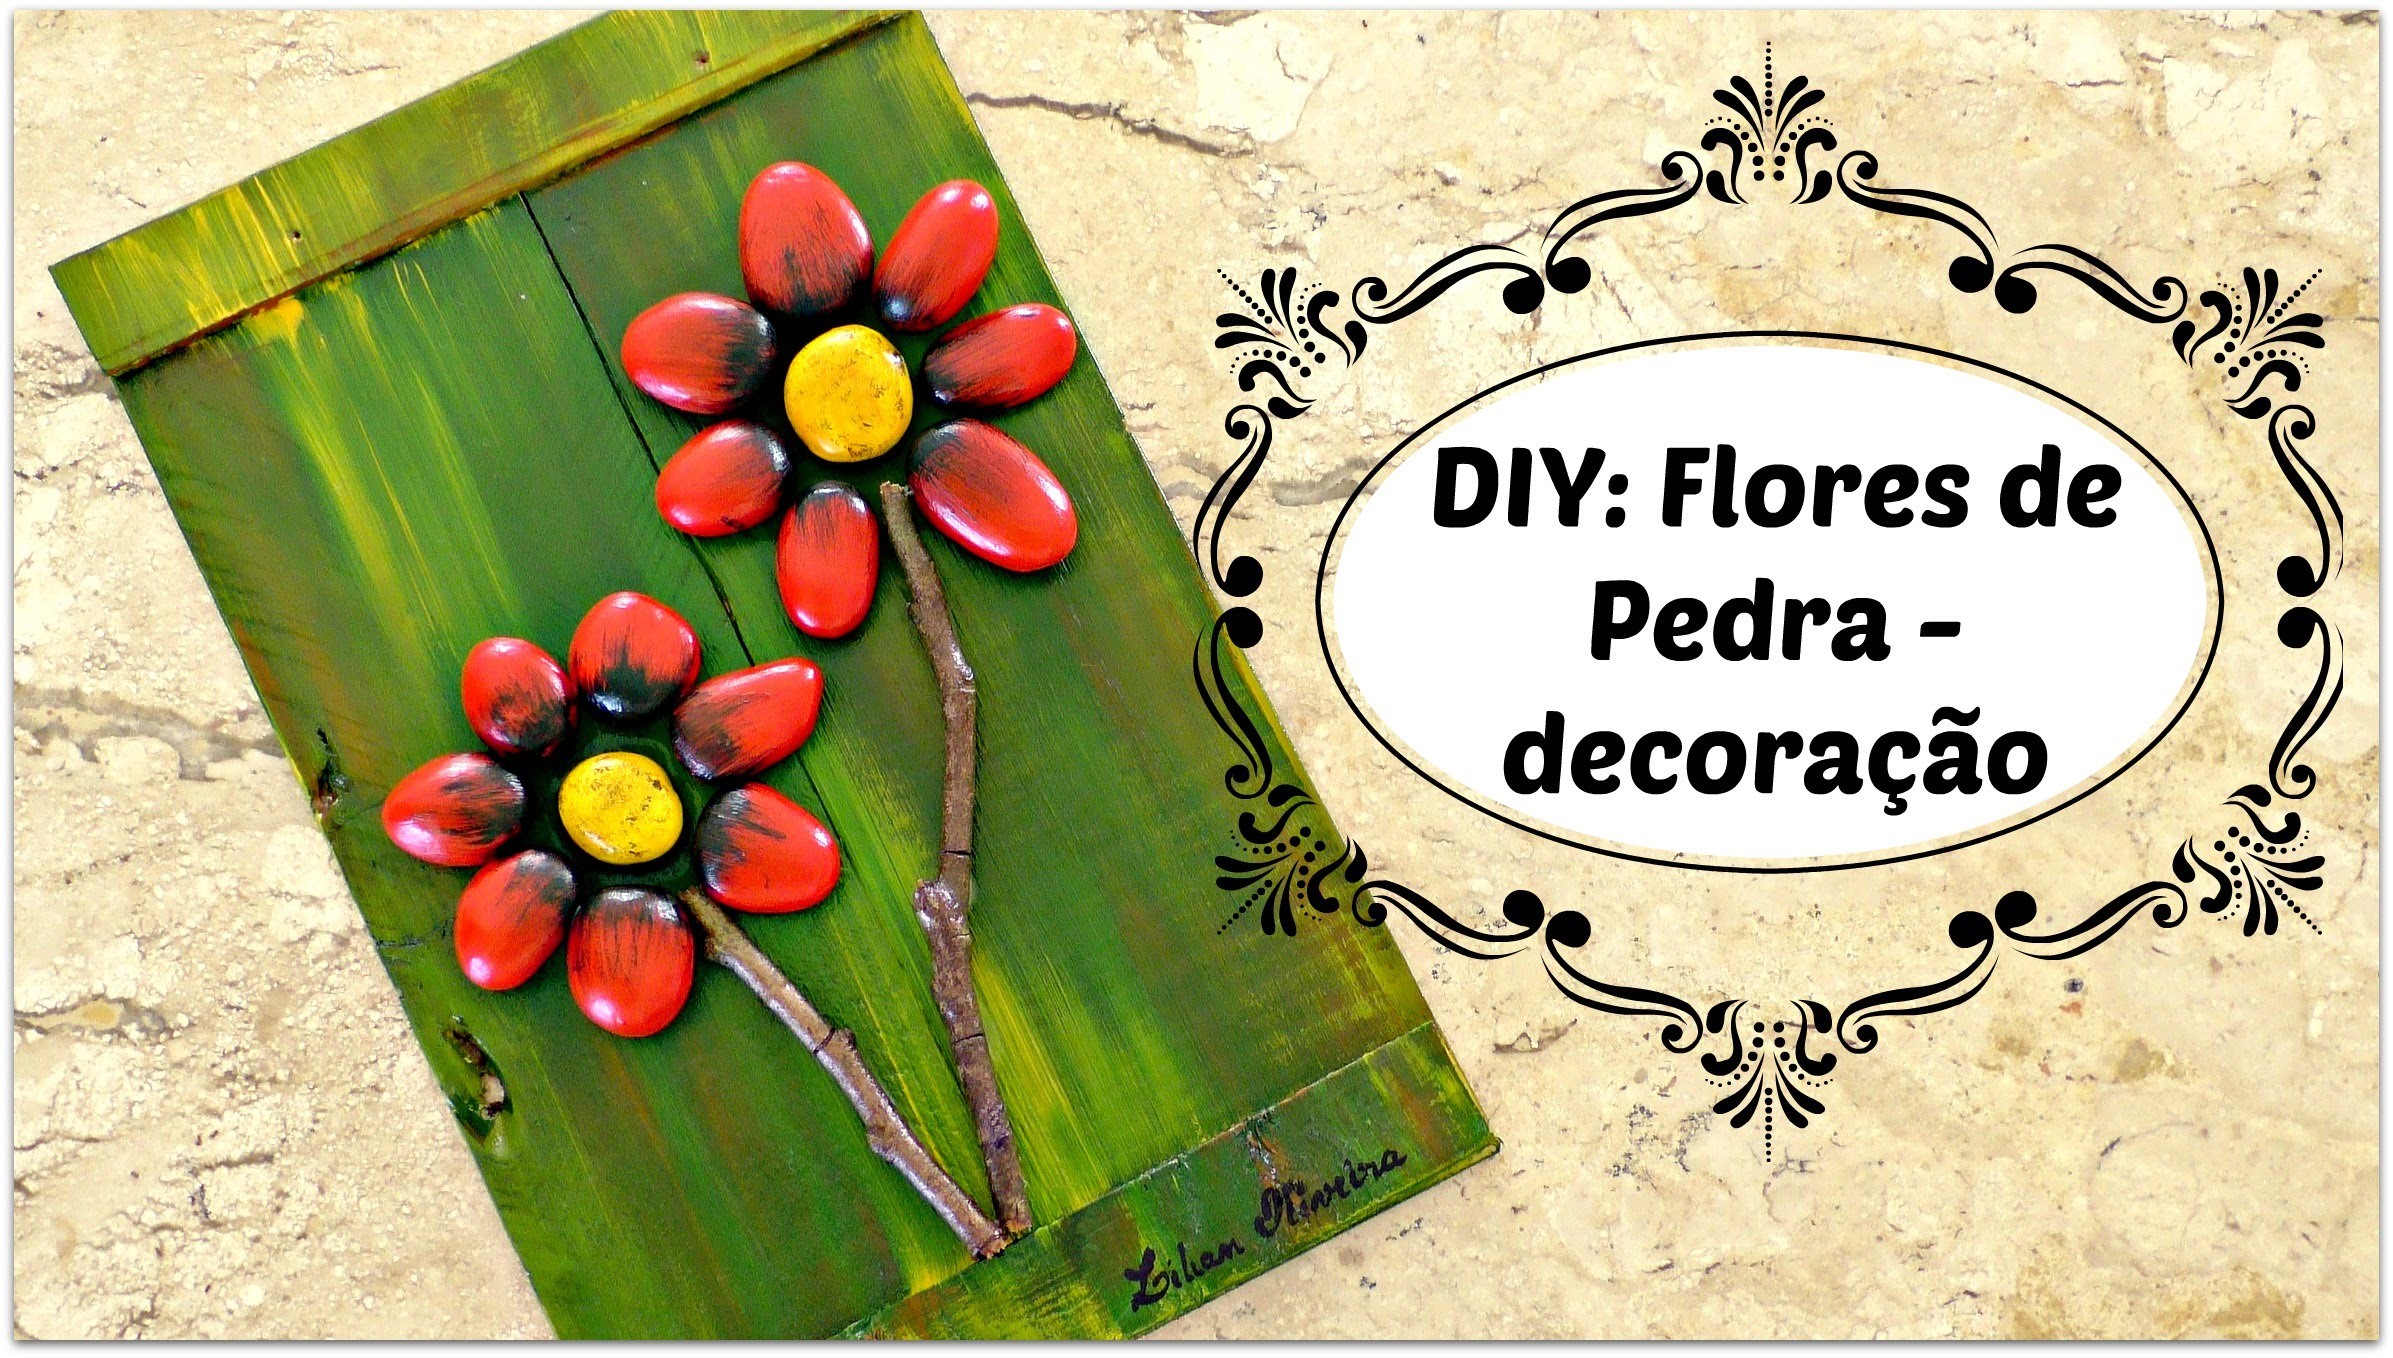 DIY: FLORES DE PEDRA - decoração linda e super fácil - Reciclagem com pedras